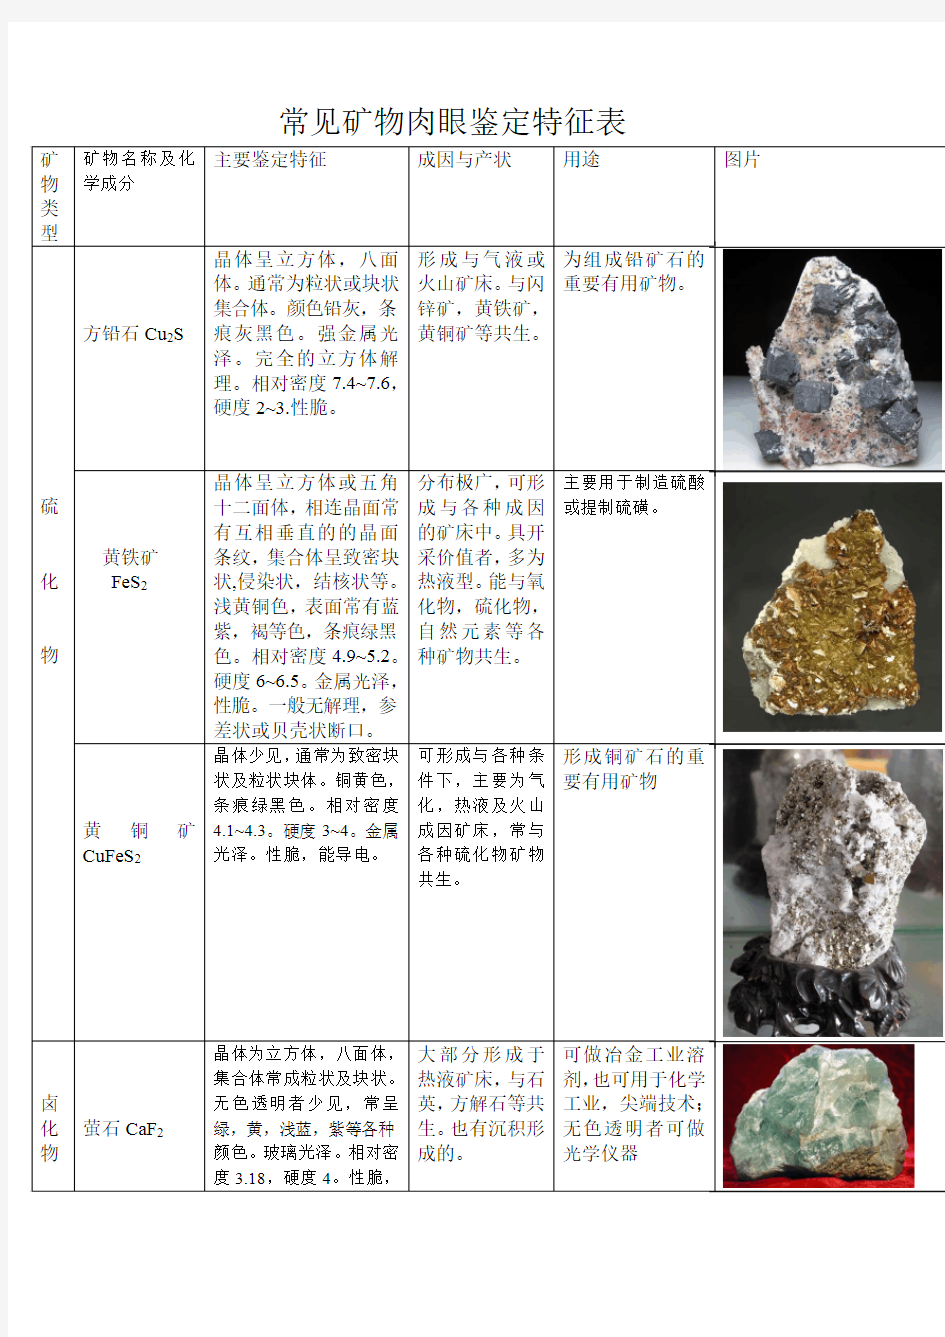 举例说明常见的矿物岩石及其特征鉴定(四川农业大学)